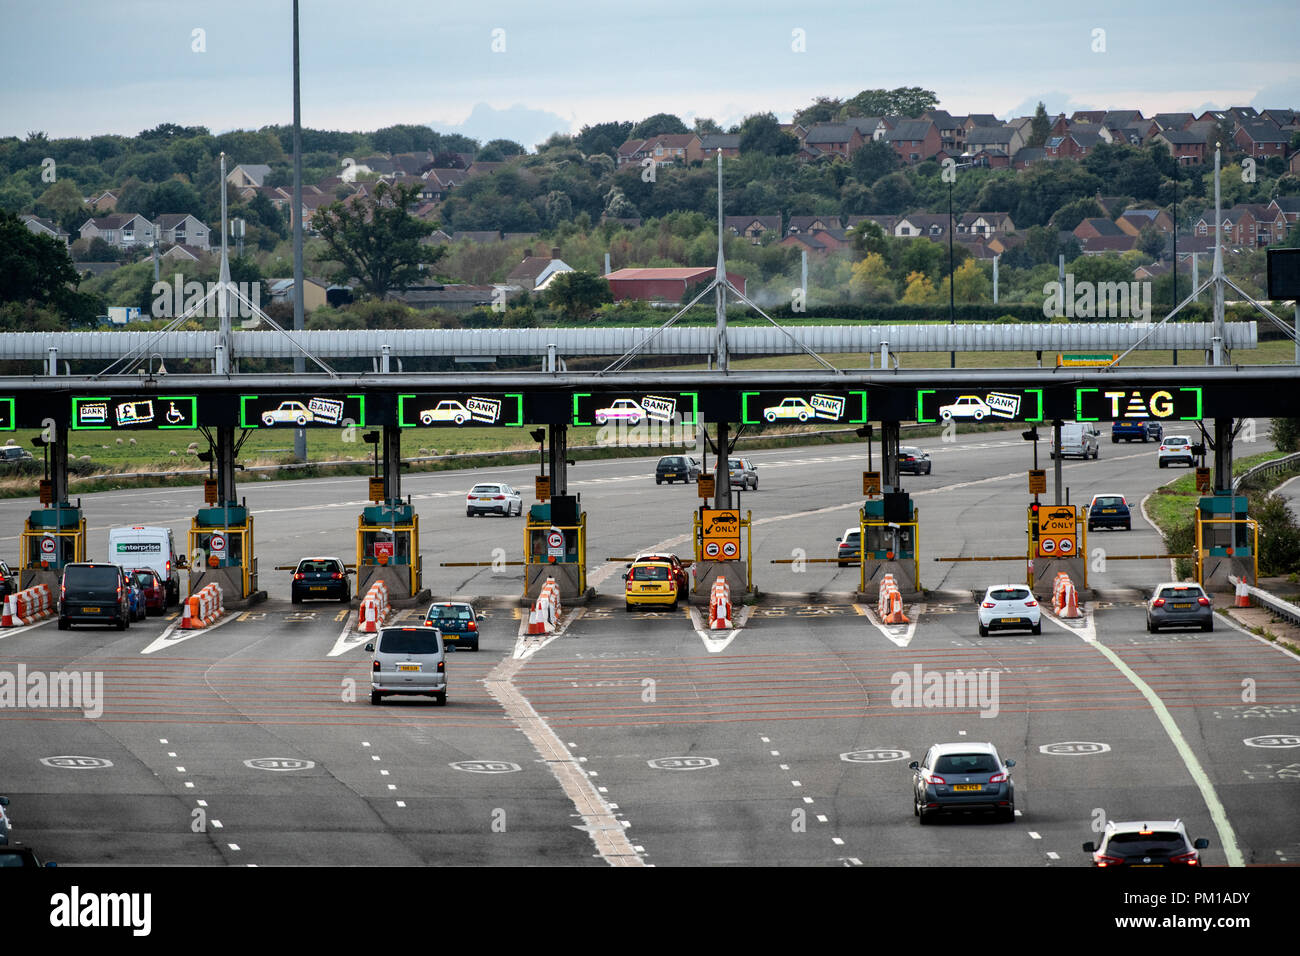 L'autoroute M4 en direction ouest sur la deuxième barrière de péage Severn Crossing renommé le pont Prince de Galles. Les péages sont dues à la casse en décembre 2018. Banque D'Images